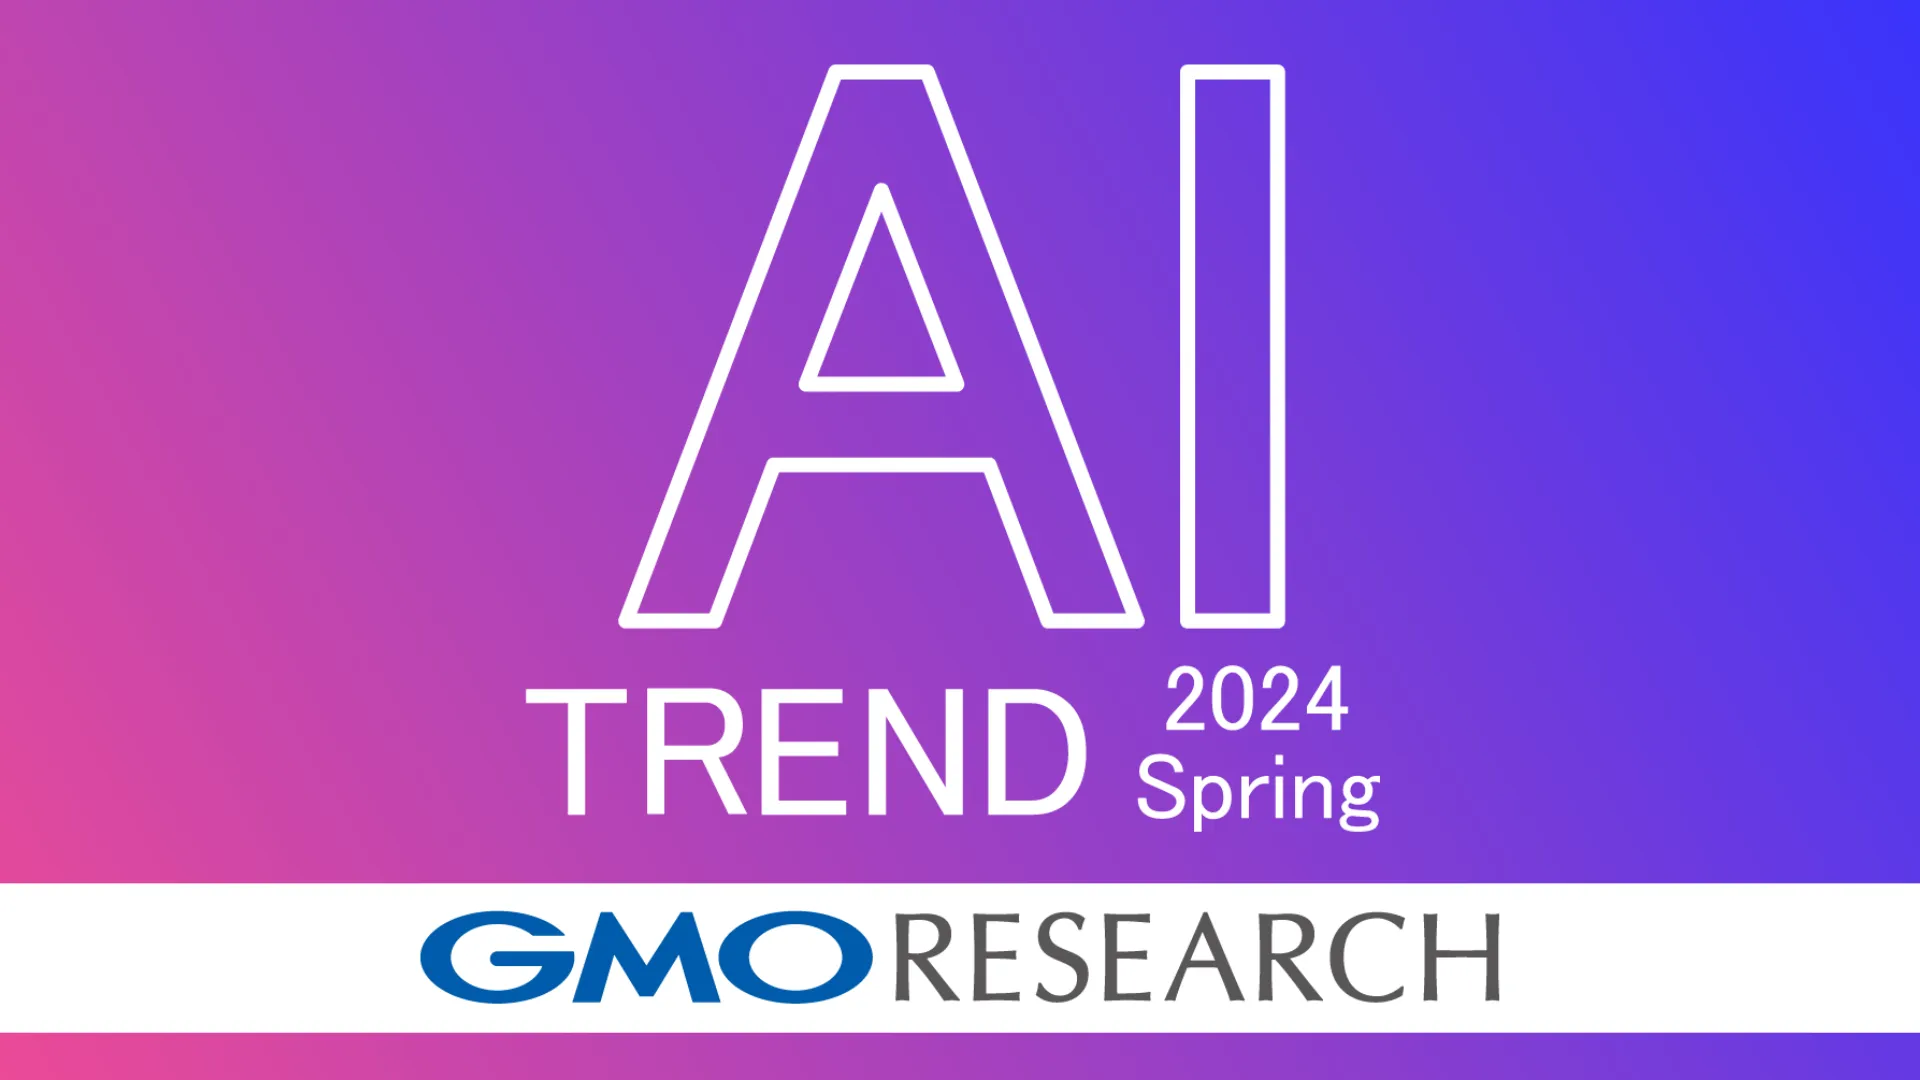 生成AIの利用経験者が3か月で2倍に増加、GMOインターネットグループが調査